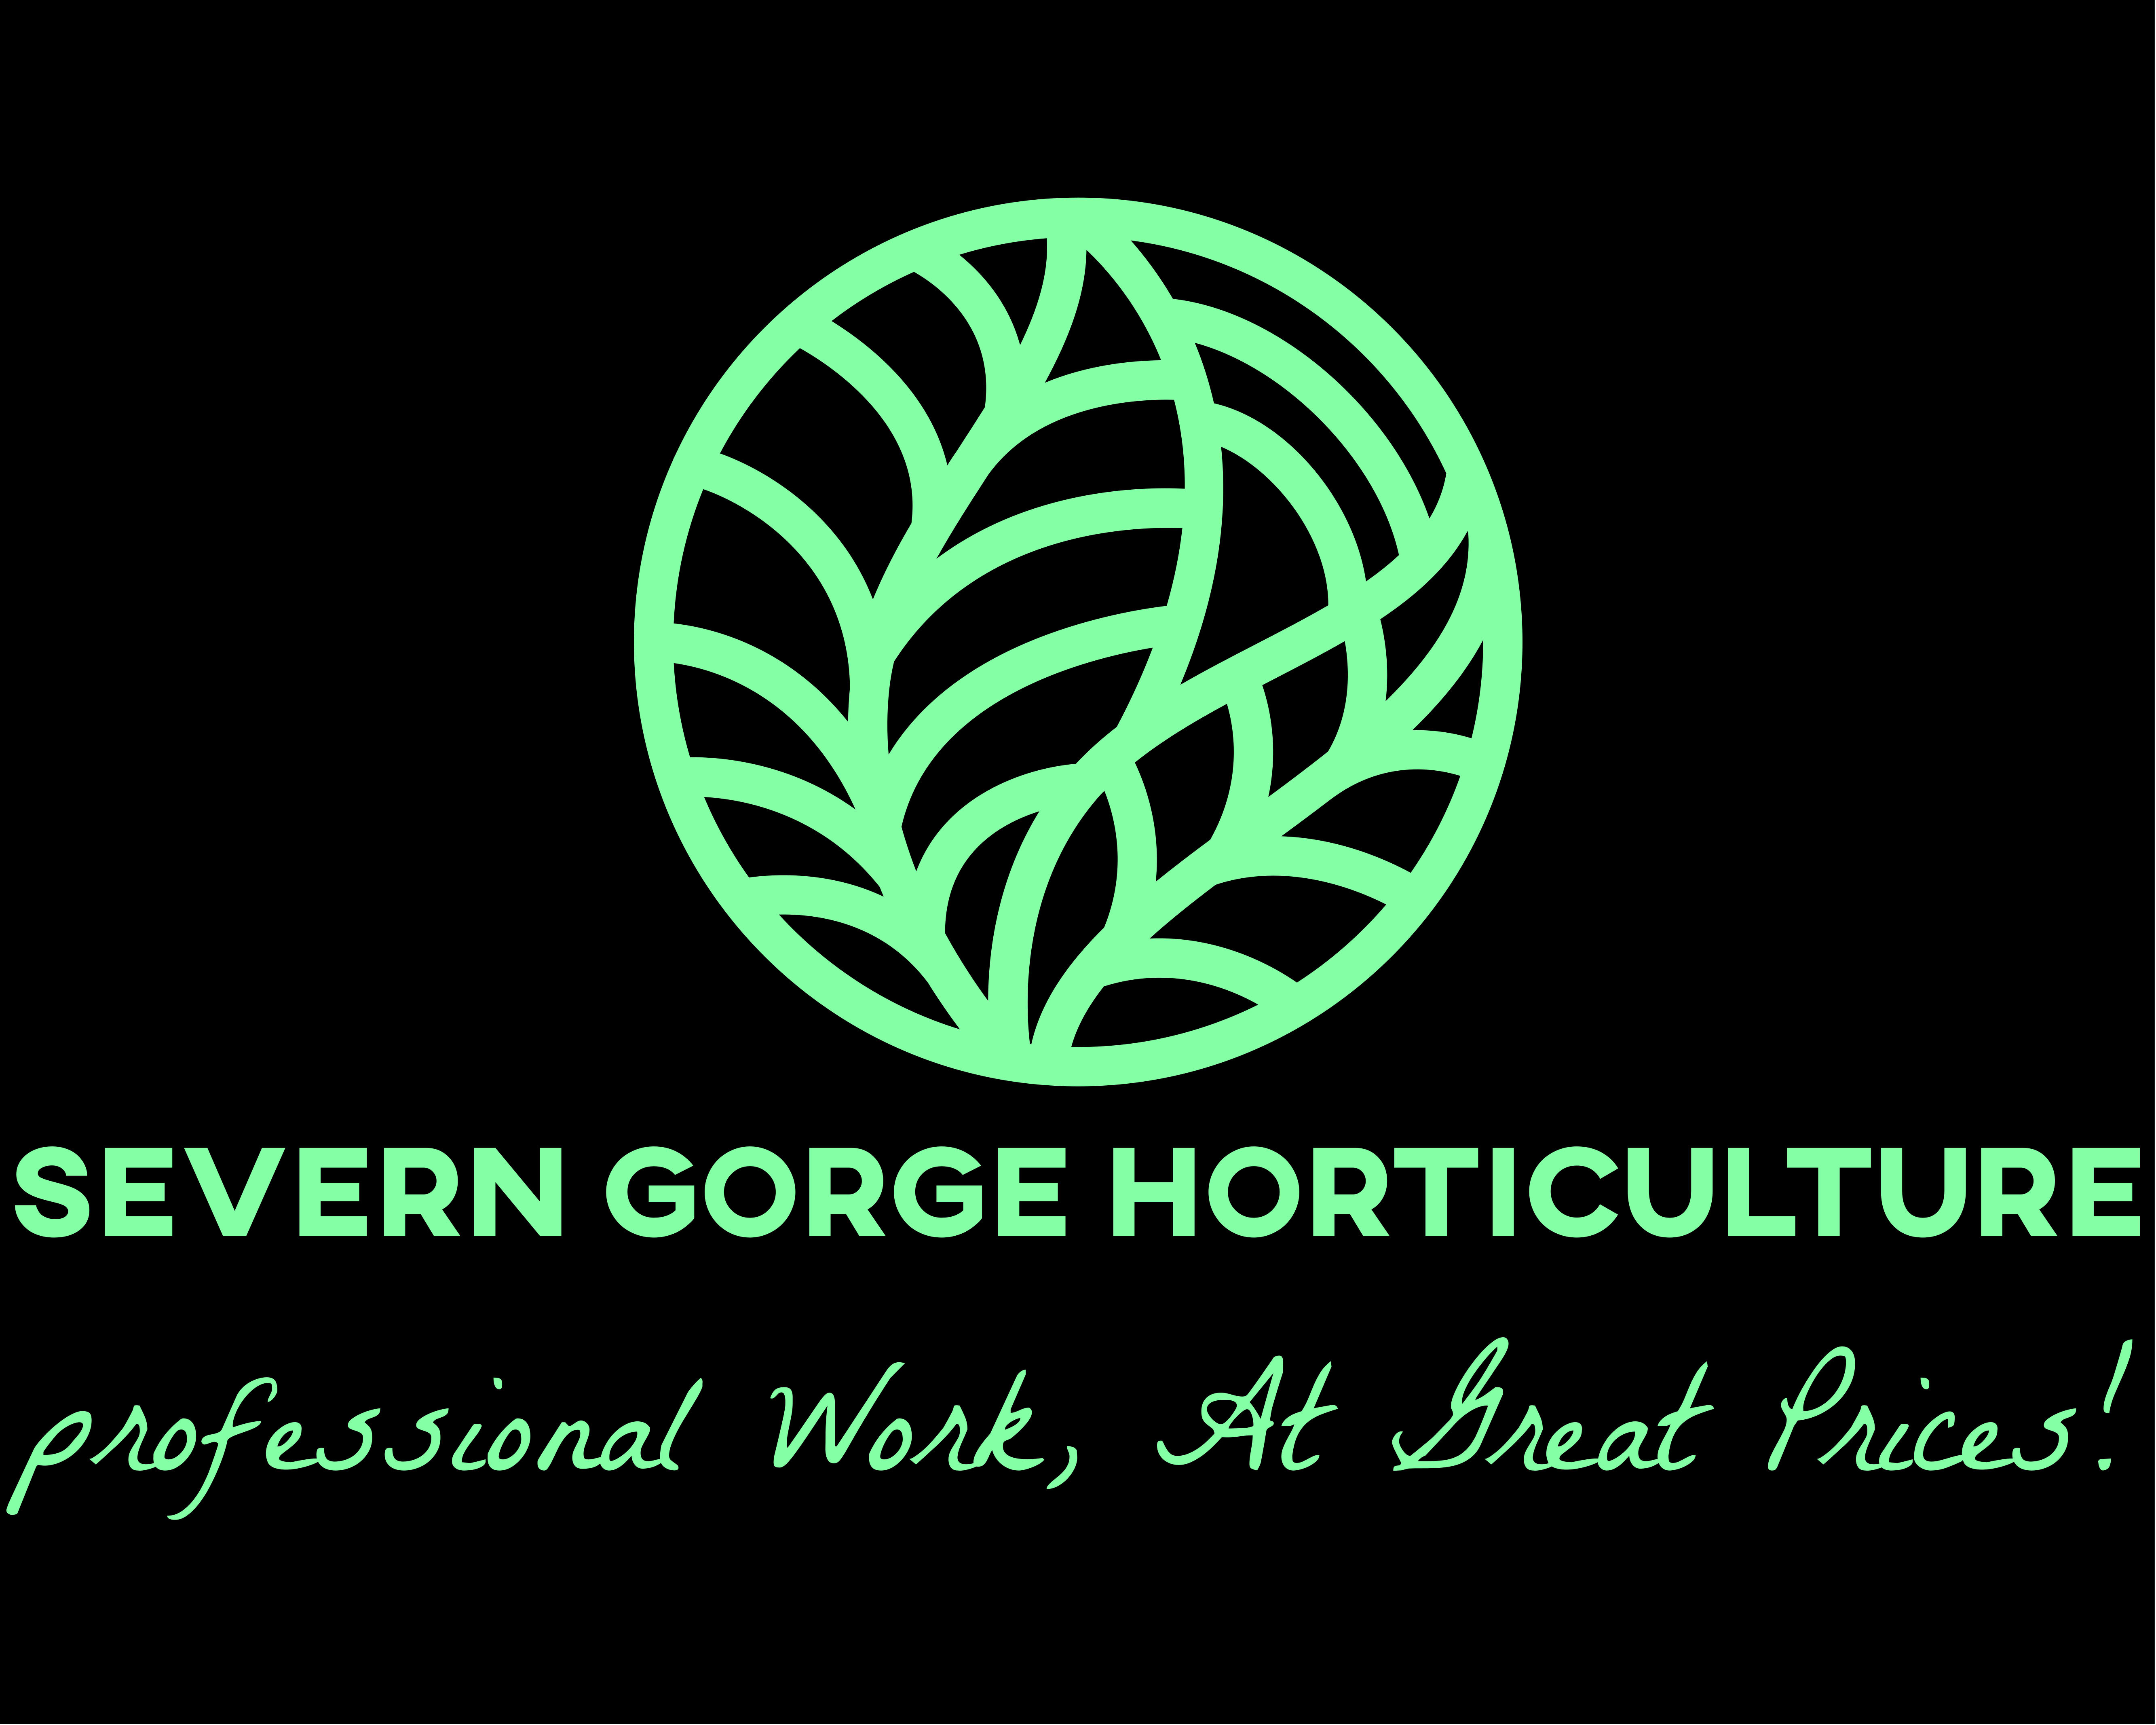 Severn Gorge Horticulture Ltd